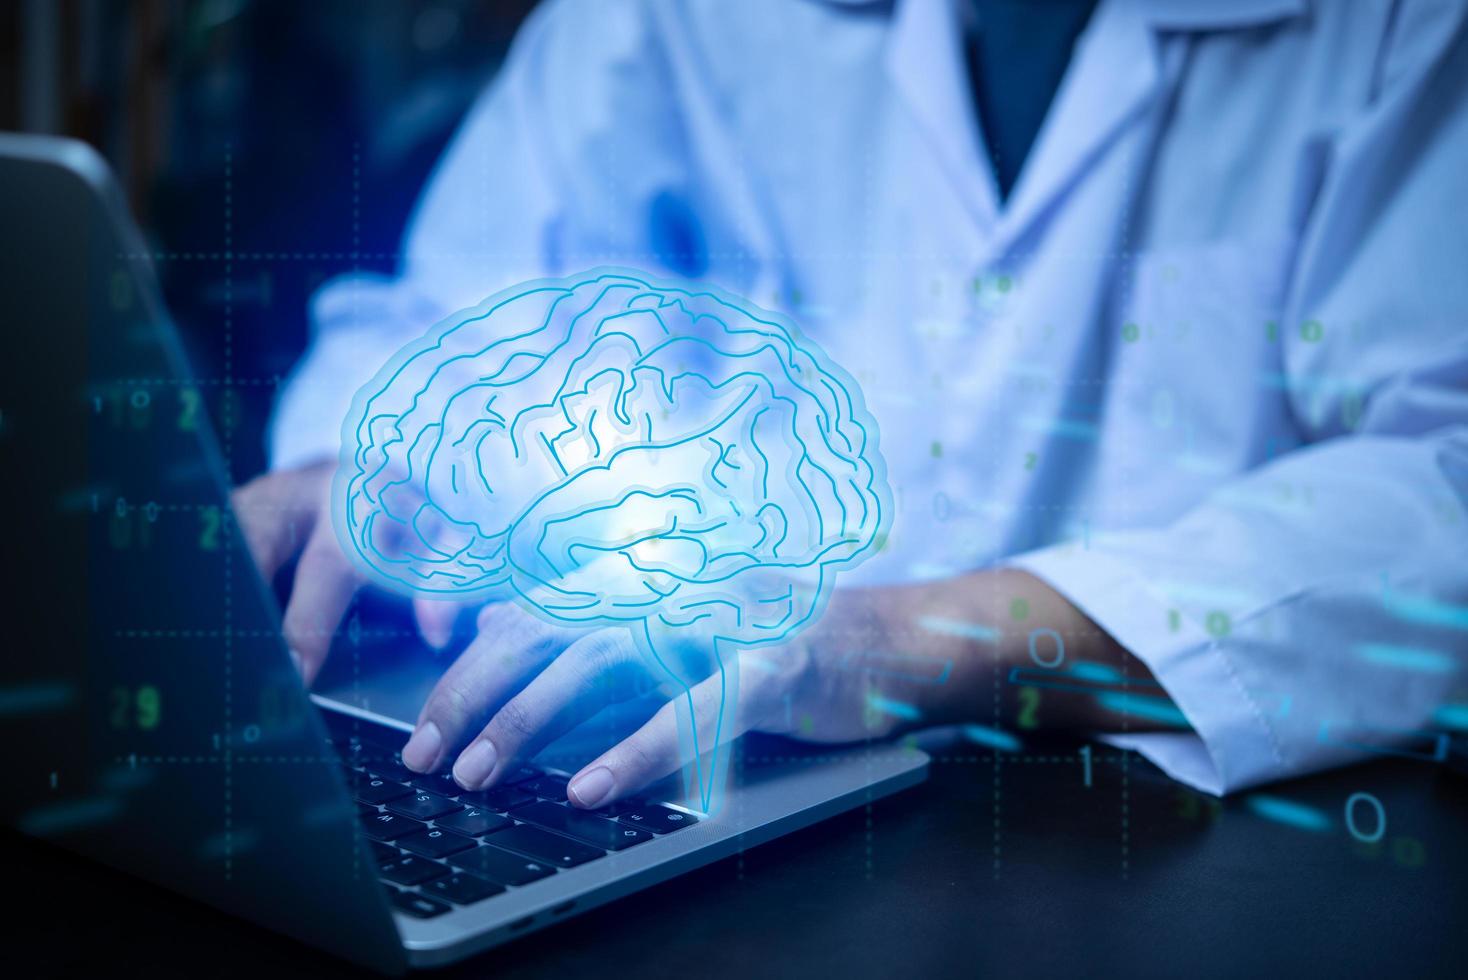 cérebro médico uma tela virtual verifica o problema com a tecnologia moderna com um sistema de computador. foto